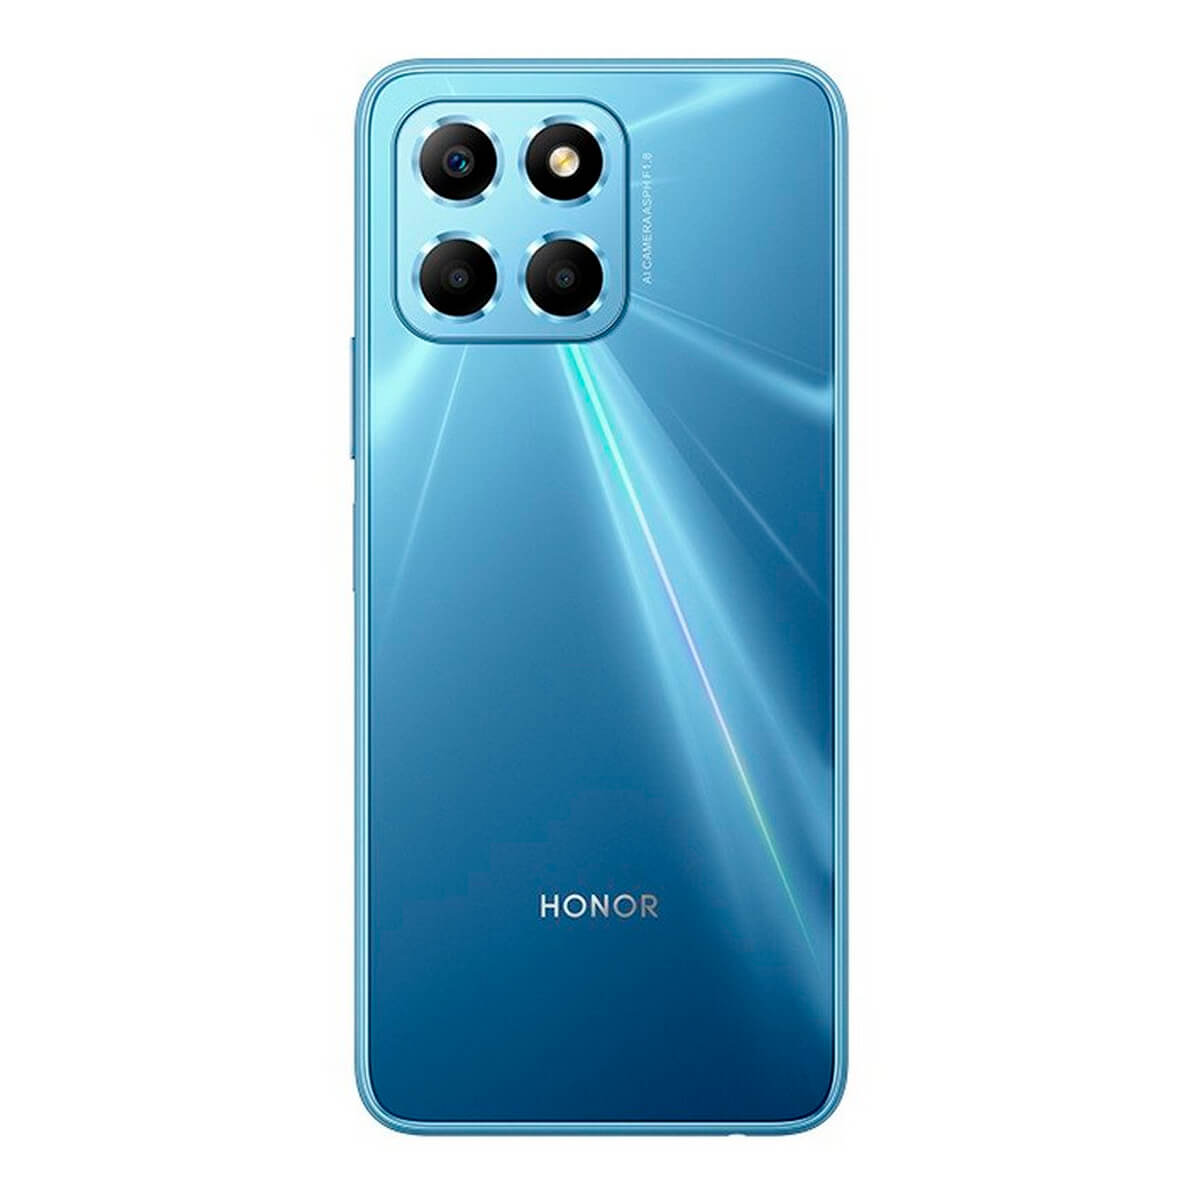 Honor X6 4 Go/64 Go Bleu (Bleu océan) Double SIM VNE-LX1